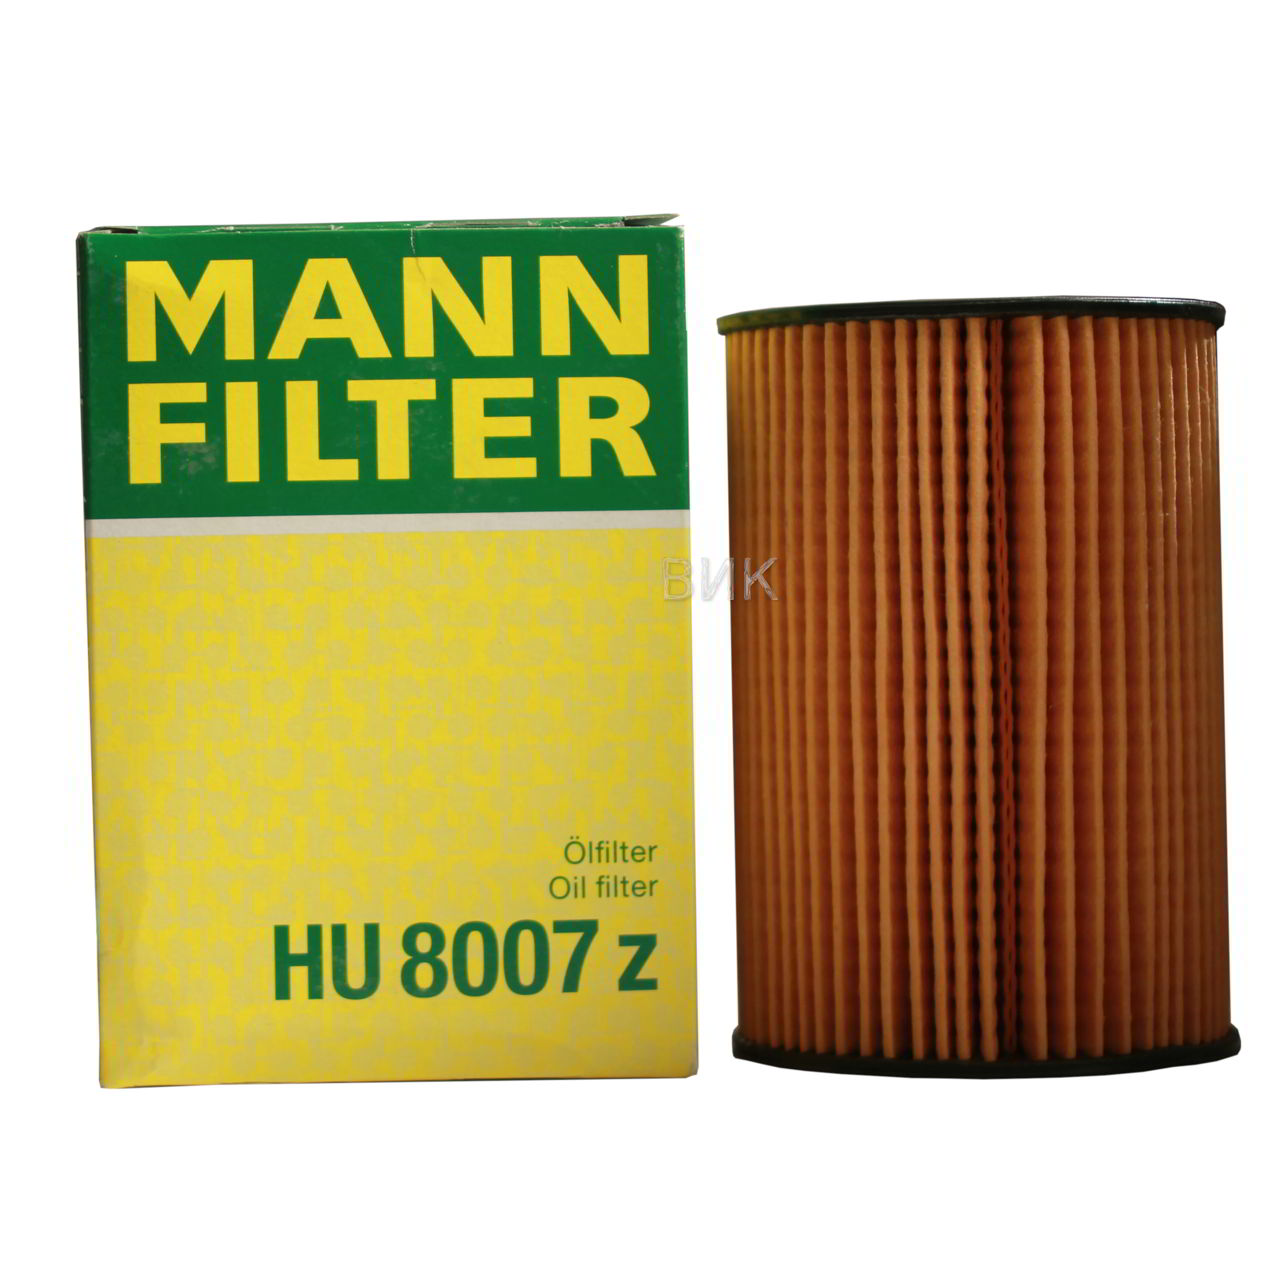 Масляный фильтр MANN-FILTER HU 8007 сменный элемент в виде вставки в масляную систему двигателя